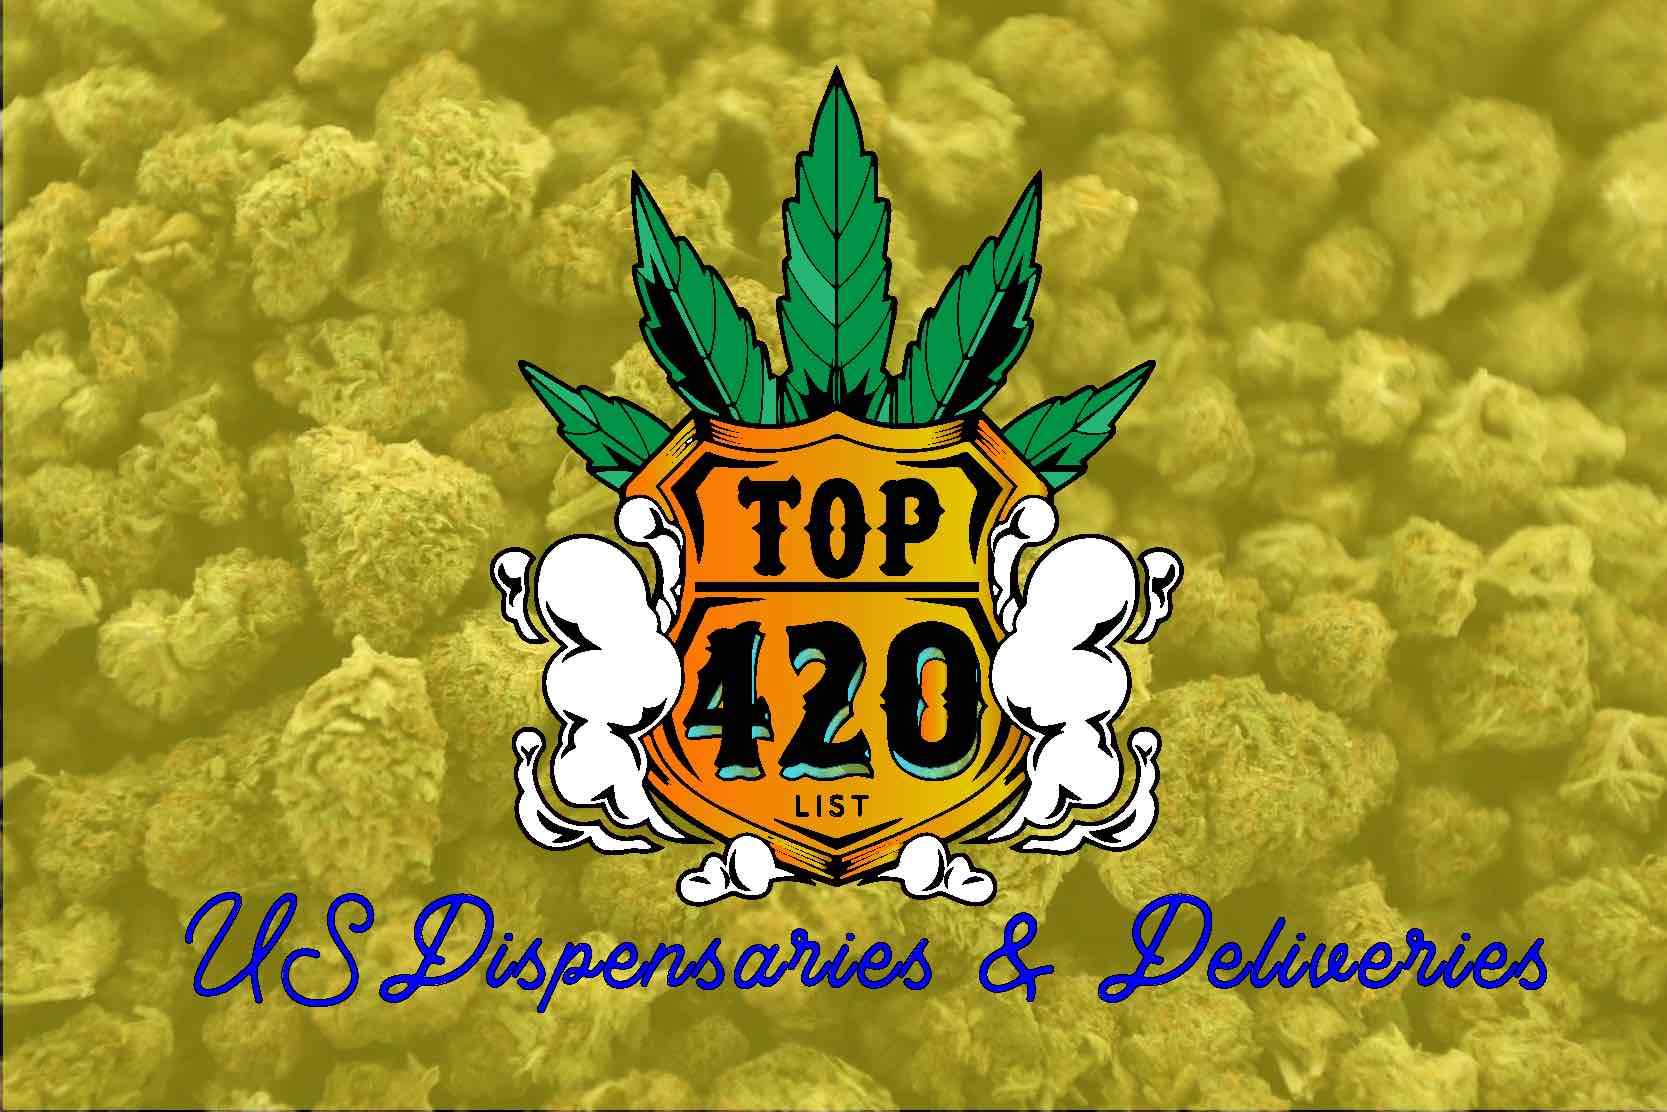 TOP 420 LIST DISPENSARIESDELIVERIES